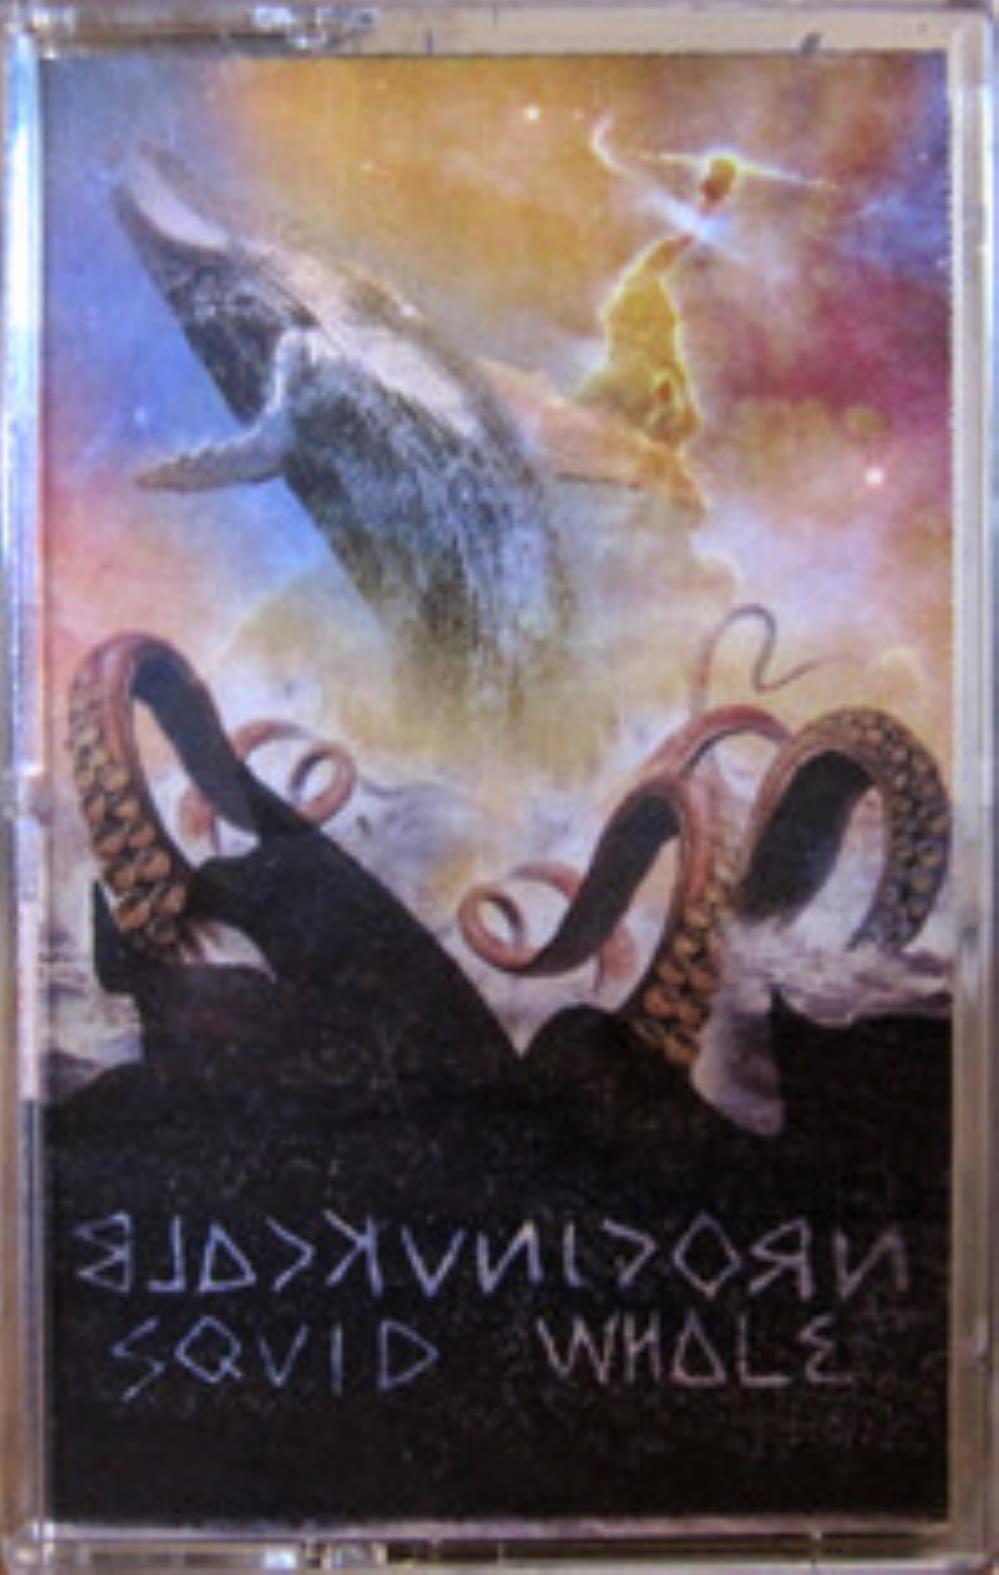 Black Unicorn Squid And Whale album cover